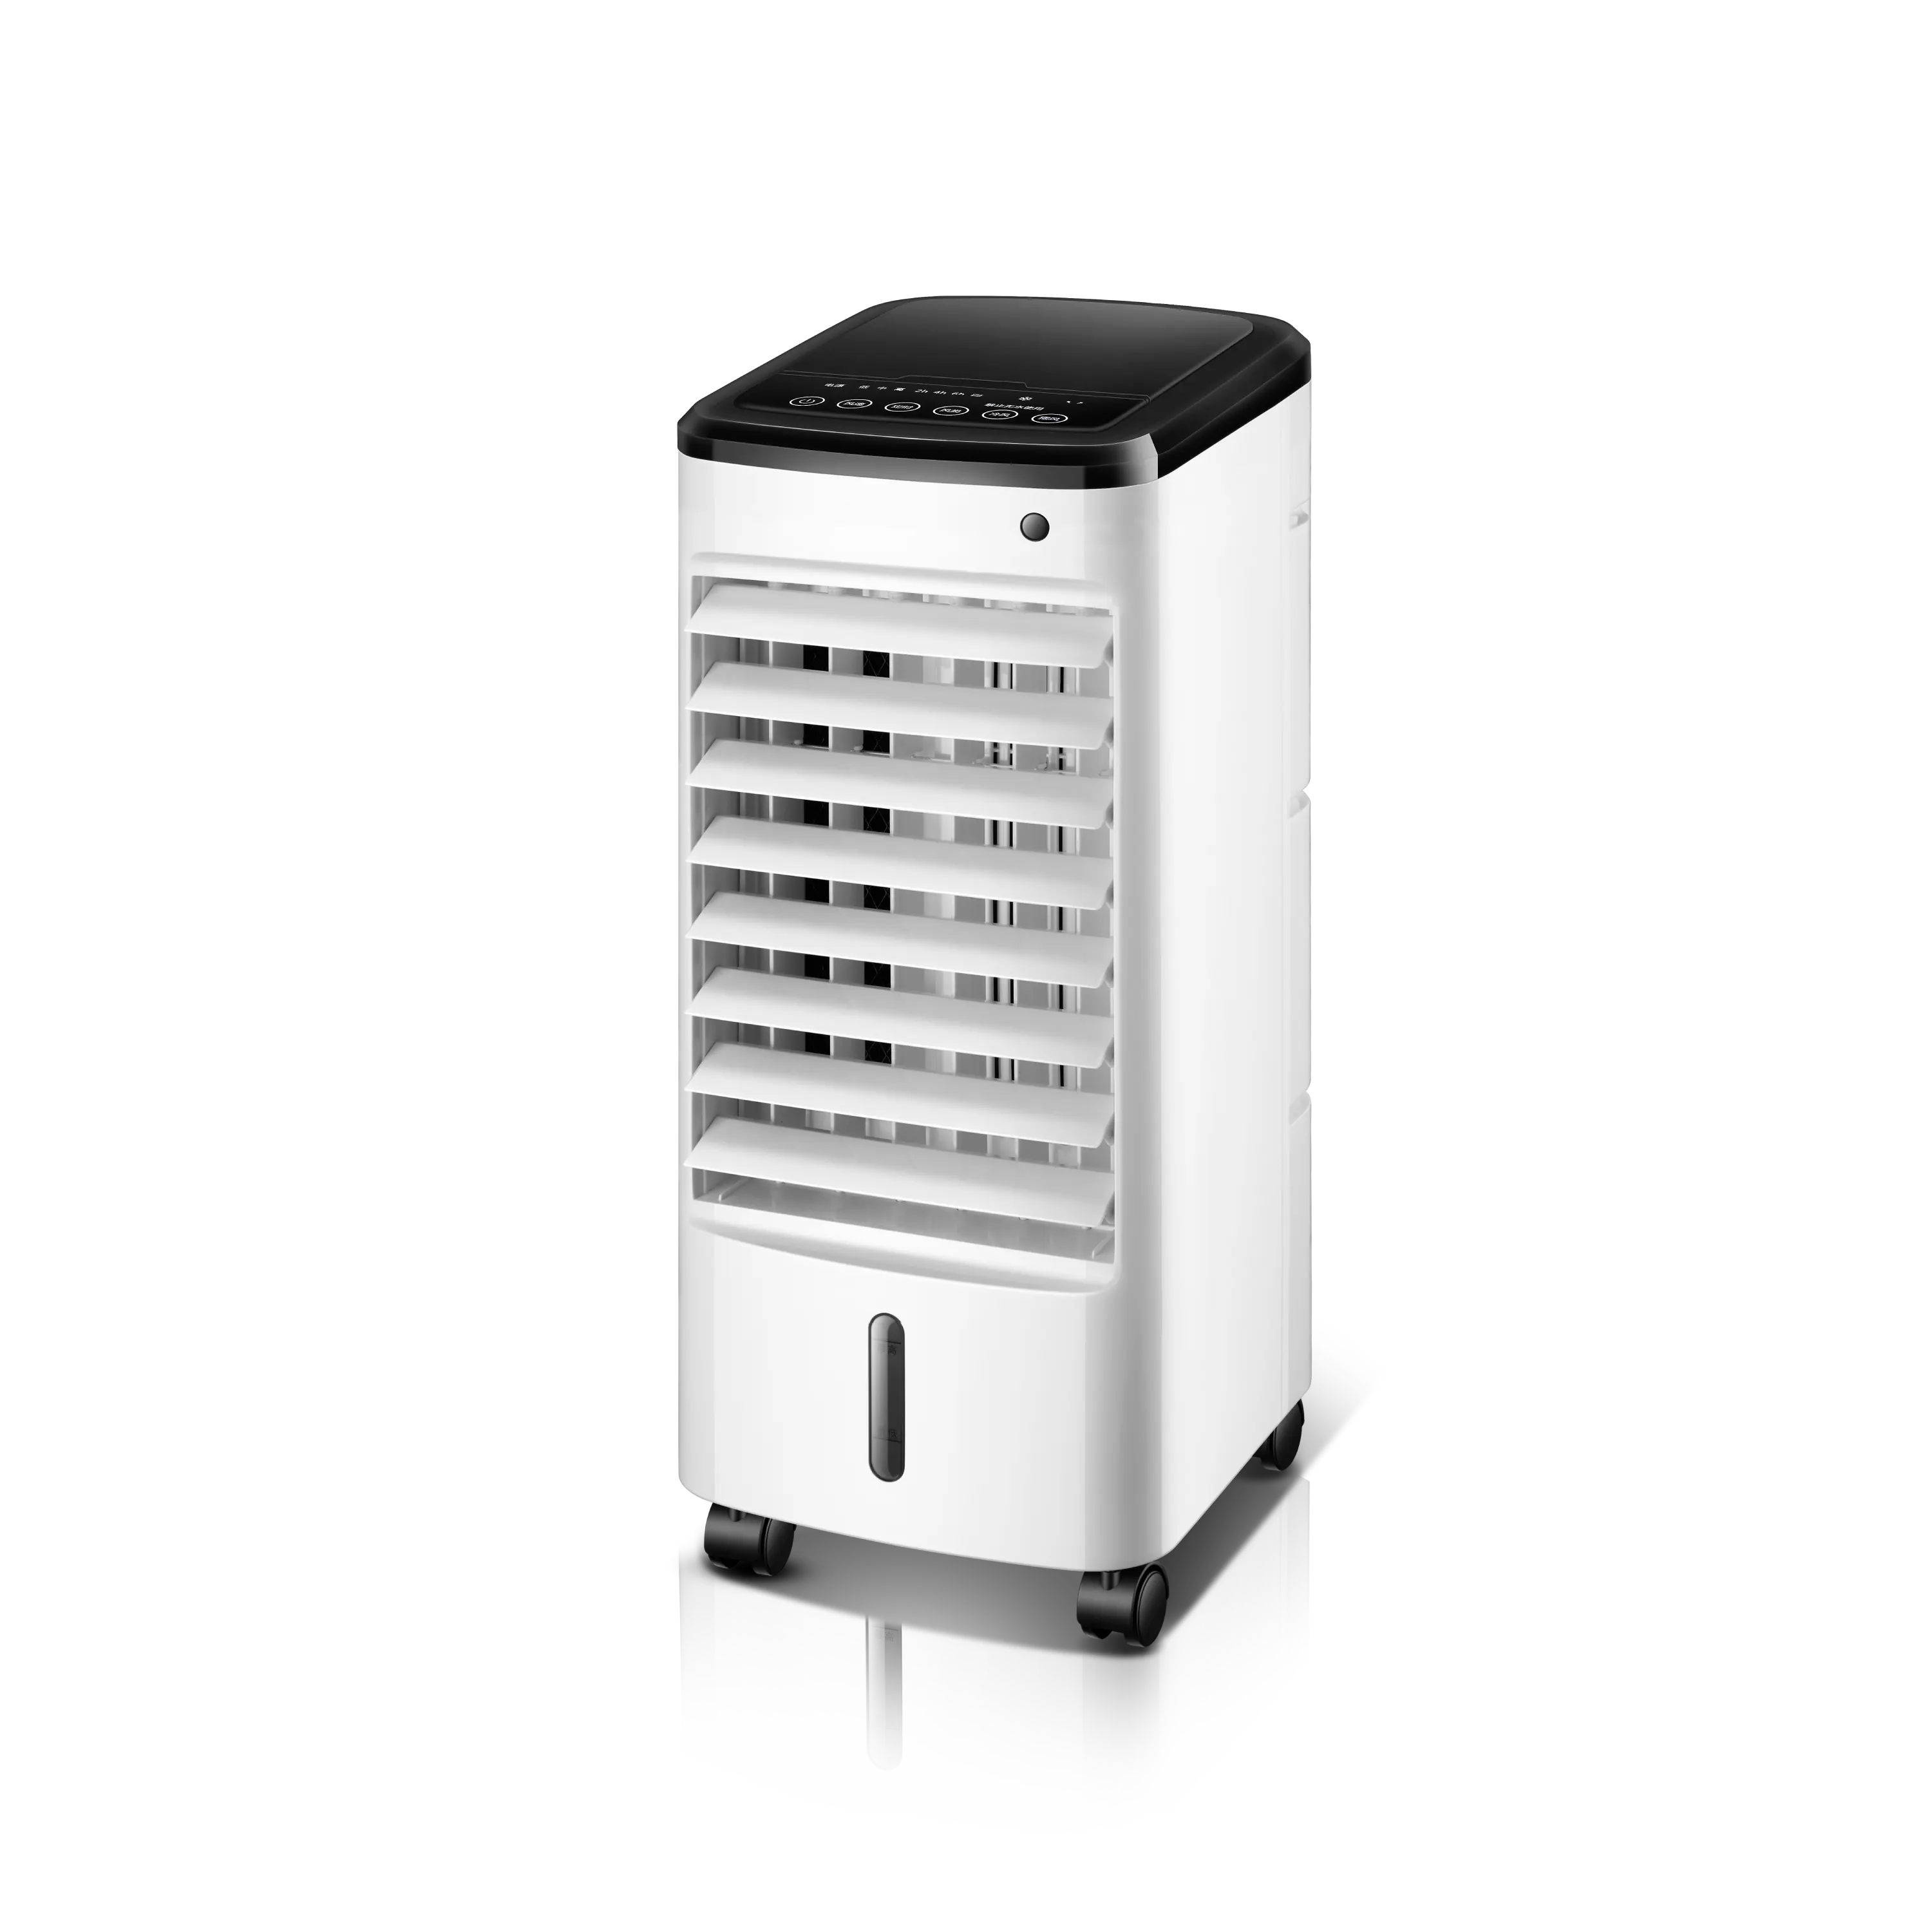 جهاز تكييف الهواء المحمول عالي الجودة, جهاز محمول لتدخين الهواء داخل المنزل أو في الهواء الطلق ، جهاز تبخيري للغرفة المنزلية